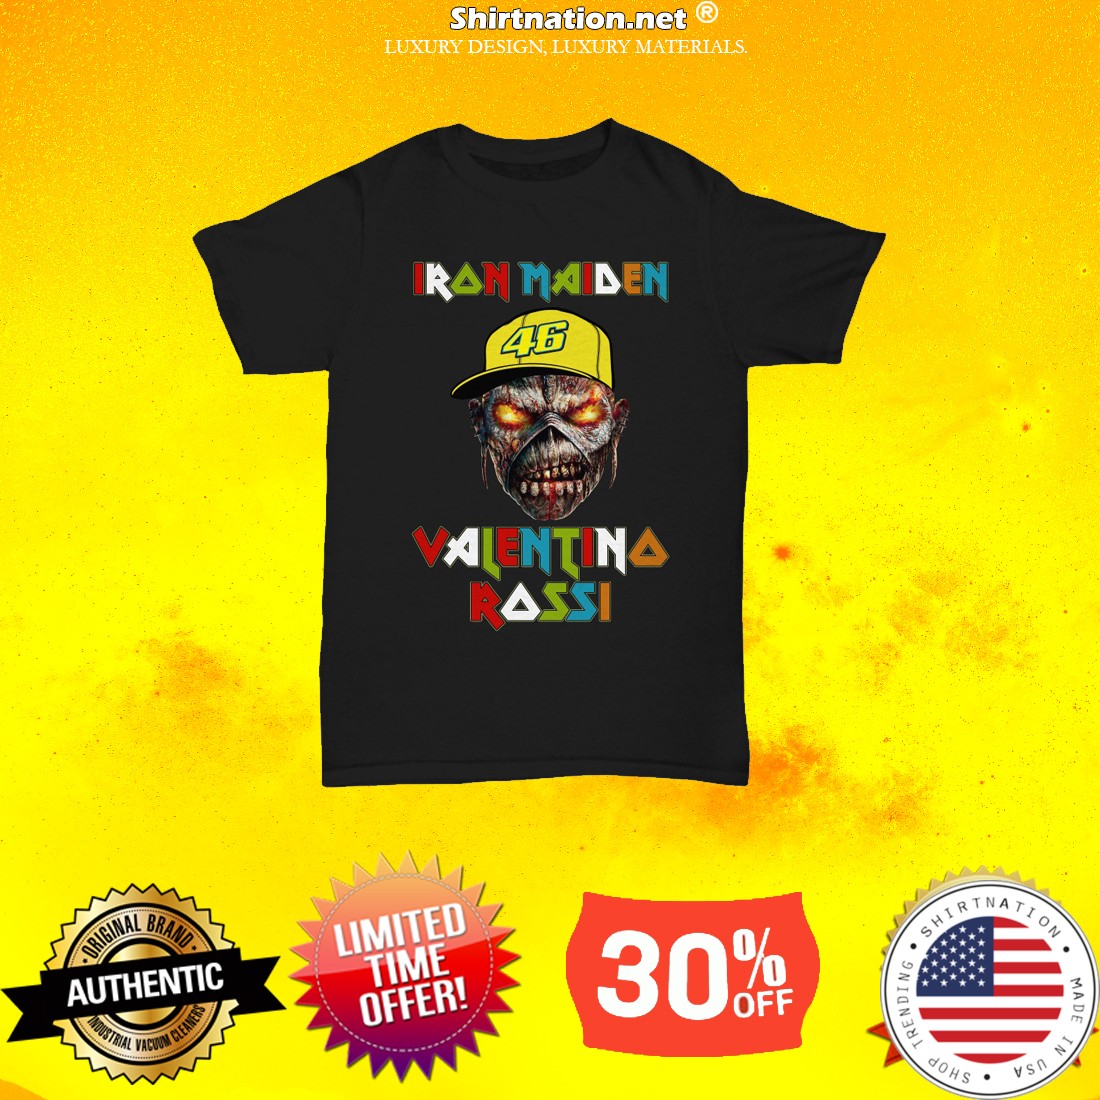 Iron Maiden Valentino Rossi shirt